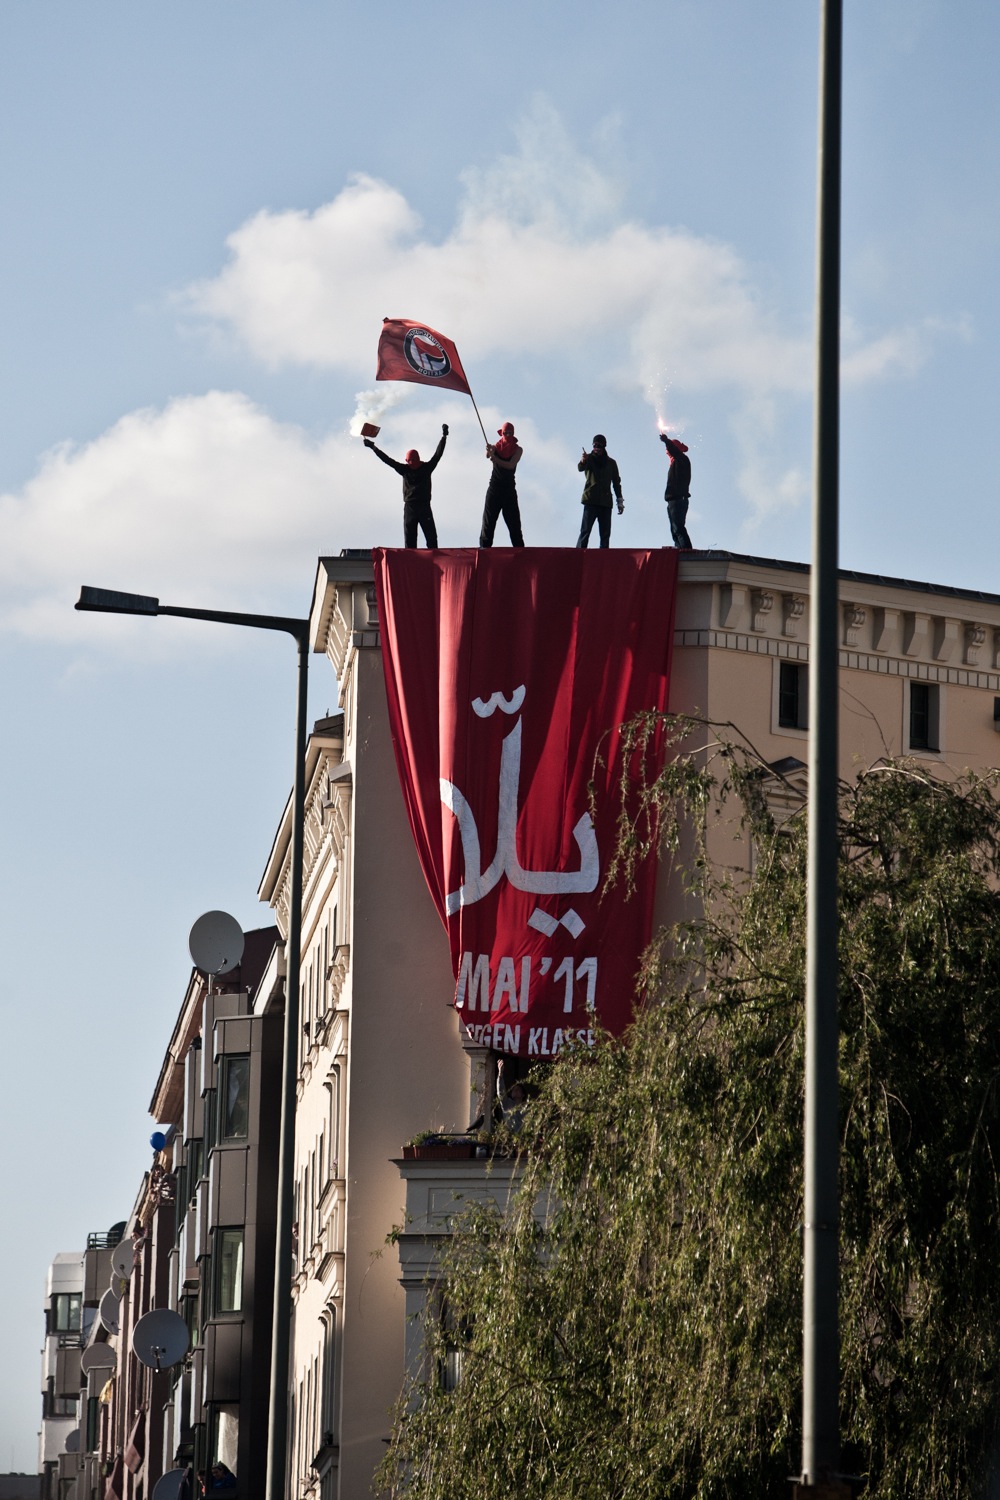 Demo in Kreuzberg